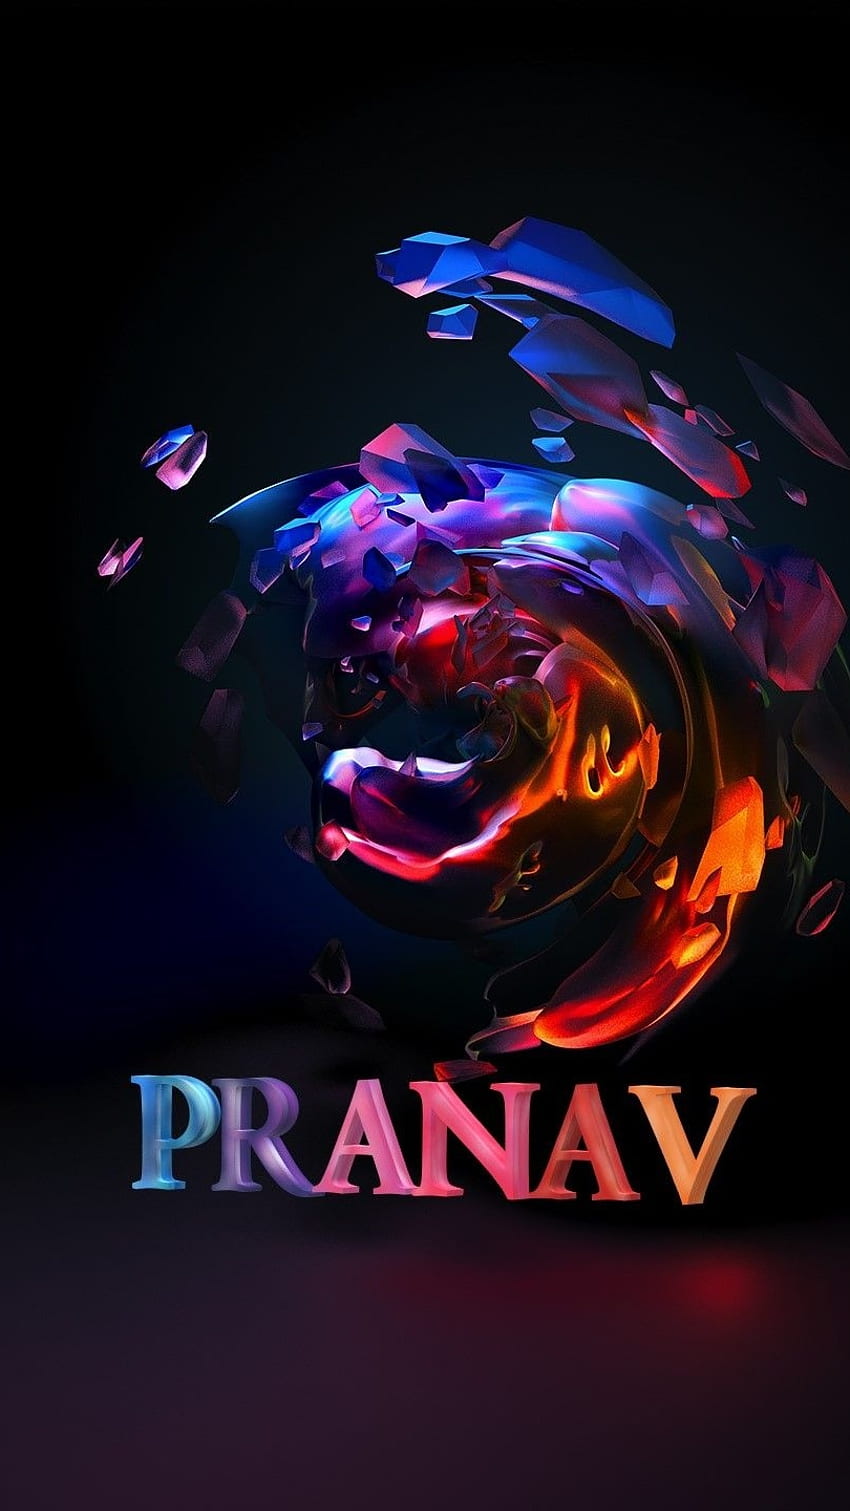 P Name, Pranav, , h d HD phone wallpaper